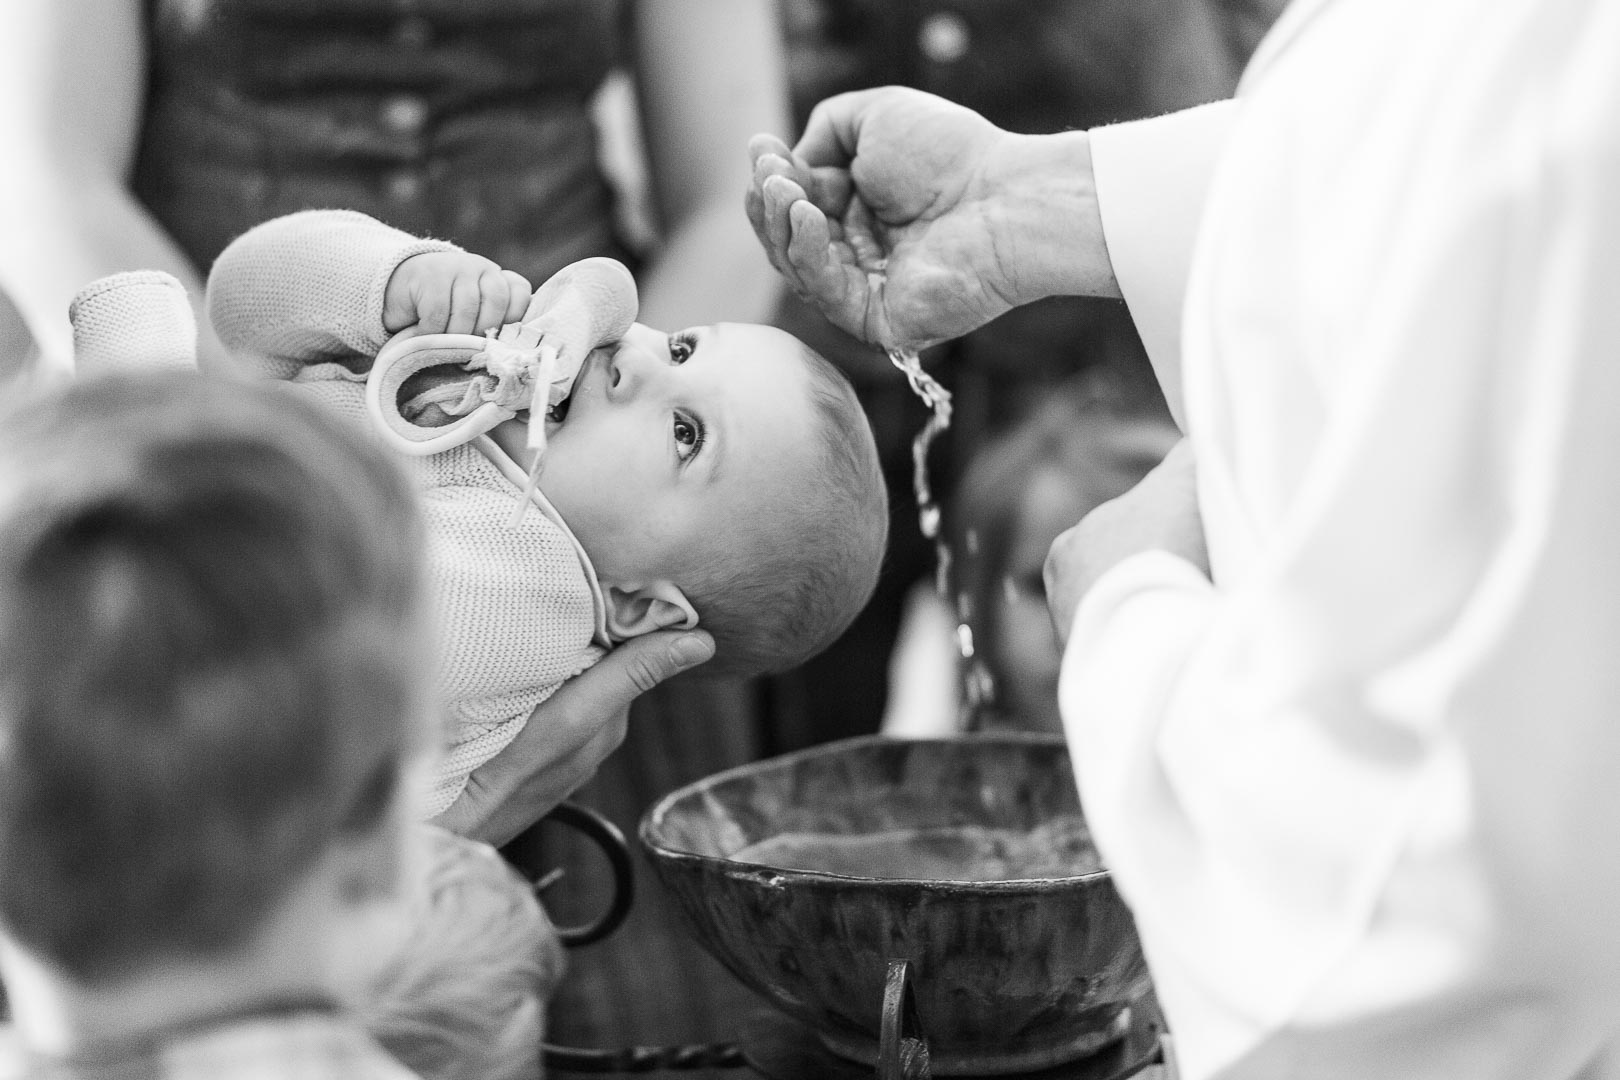 eine männliche Hand schöpft Wasser über den Kopf eines zu taufenden Babys